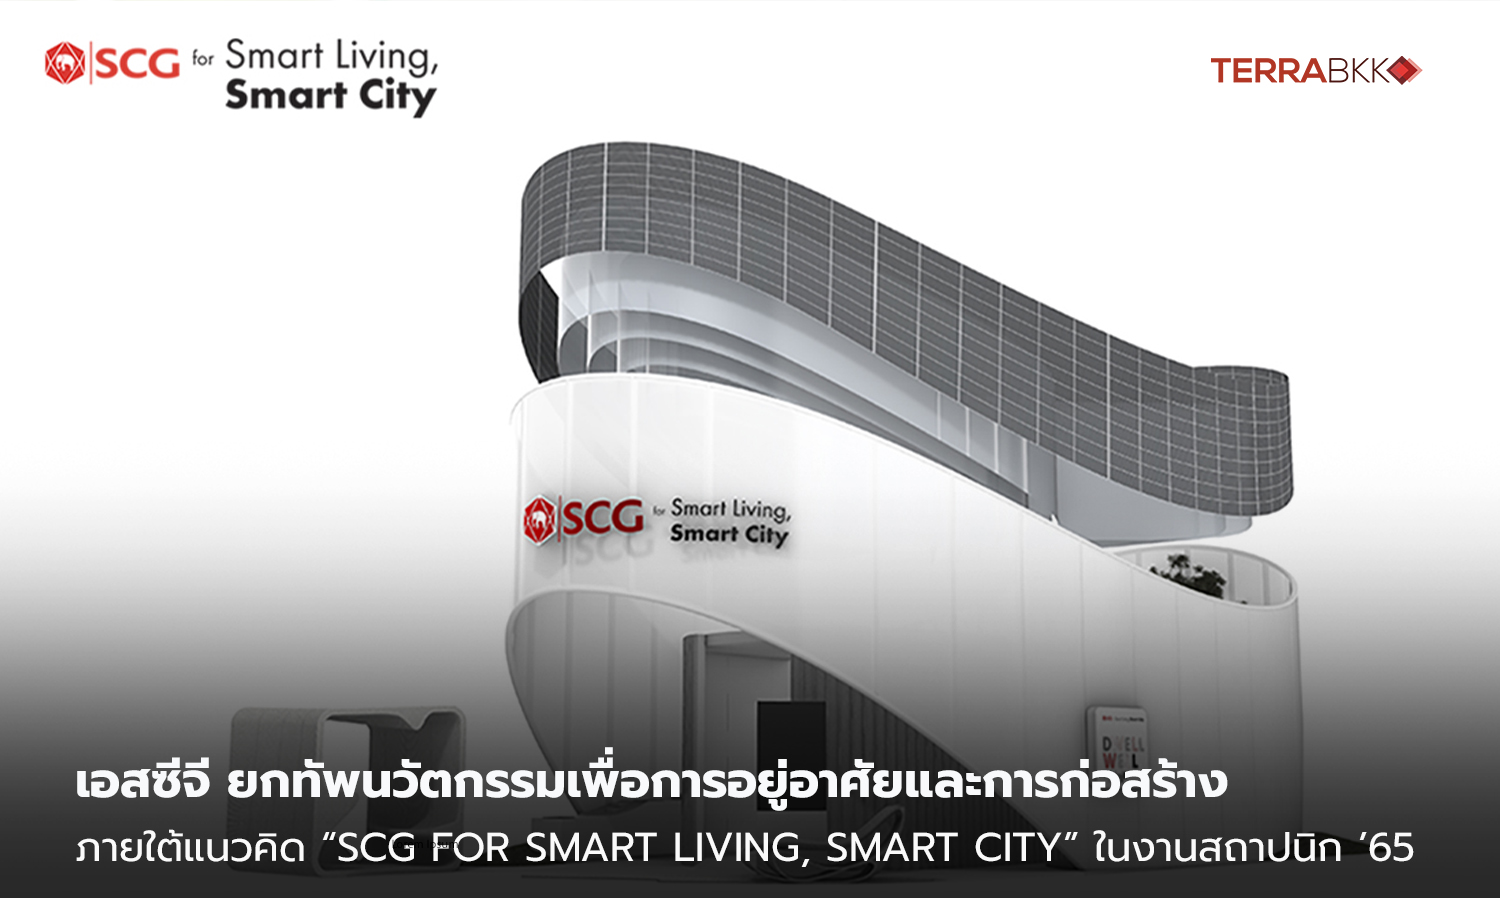 เอสซีจี ยกทัพนวัตกรรมเพื่อการอยู่อาศัยและการก่อสร้าง เสริมคุณภาพชีวิตที่ดีในปัจจุบัน และสร้างสรรค์เมืองที่น่าอยู่ยิ่งขึ้นในอนาคต  ภายใต้แนวคิด “SCG for Smart Living, Smart City” ในงานสถาปนิก ’65